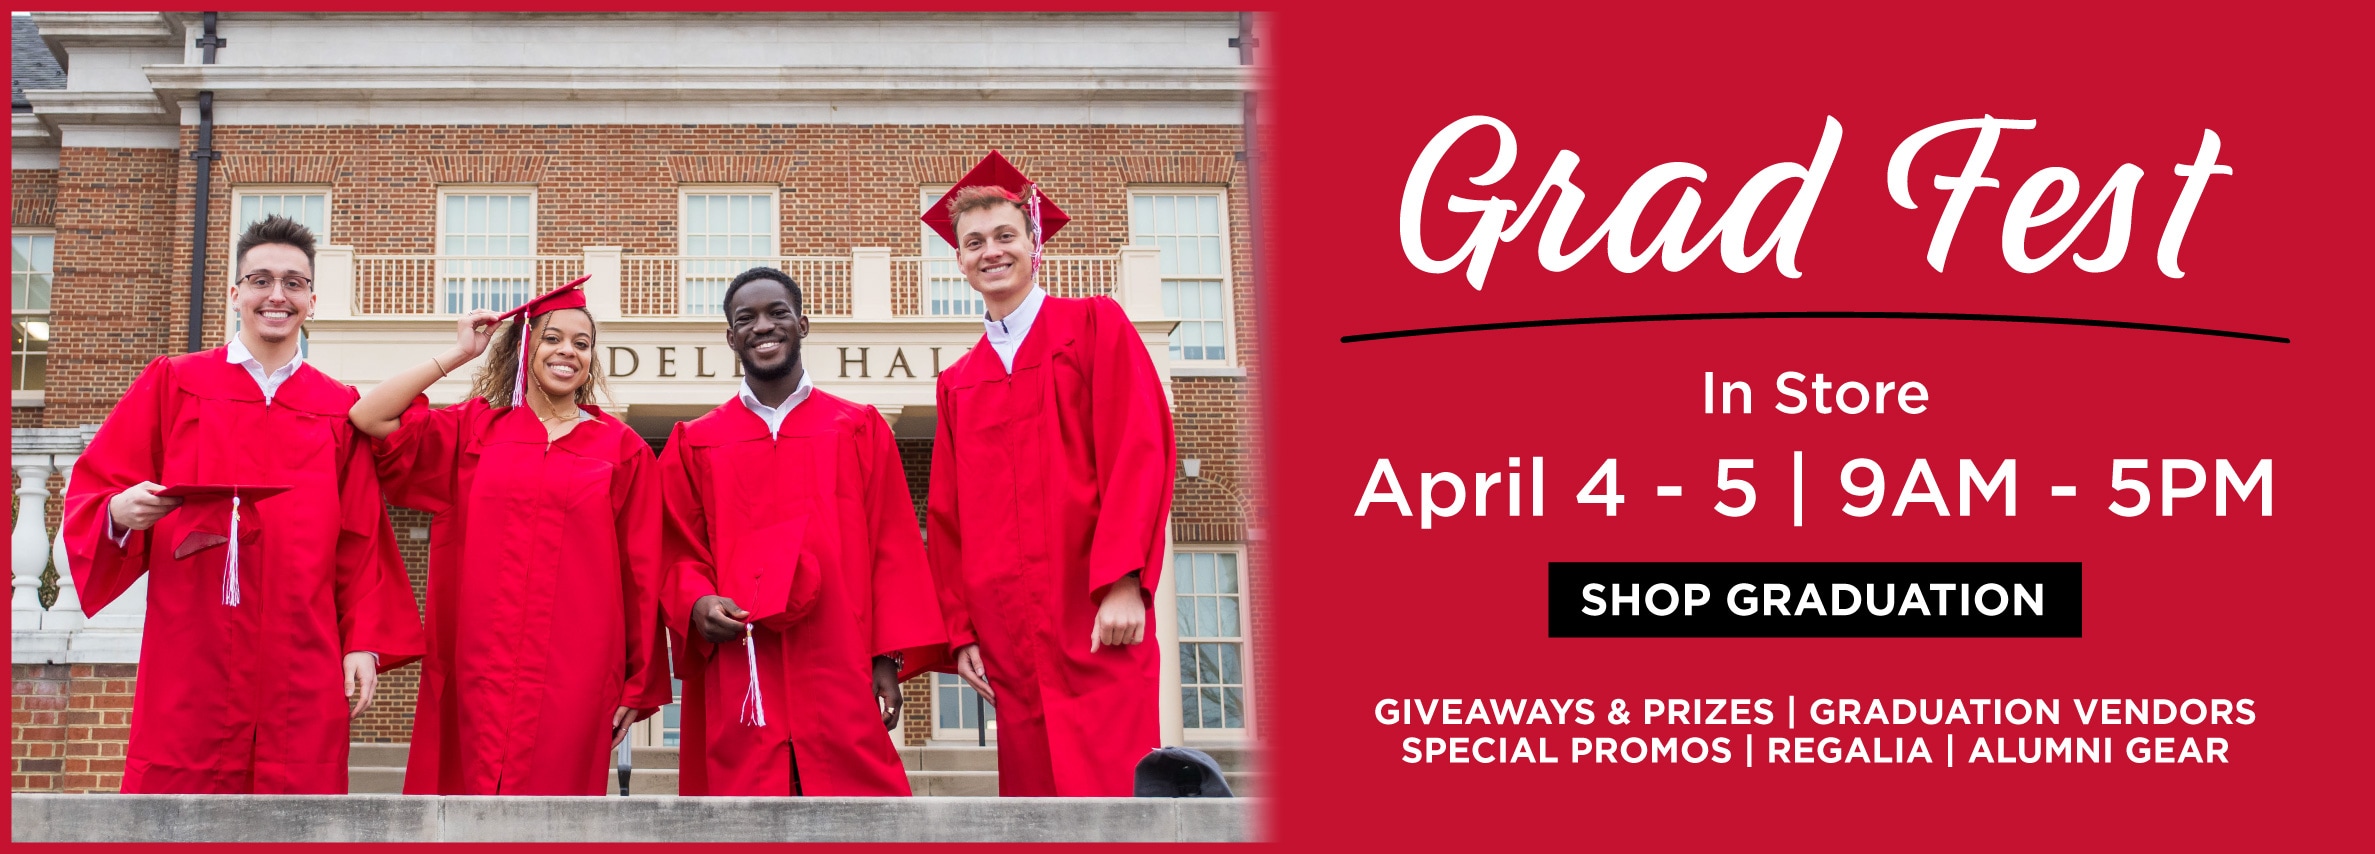 Grad Fest In Store April 4 - 5 | 9AM-5PM Shop Graduation Giveaways & Prizes | Graduations Vendors | Special Promos | Regalia | Alumni Gear